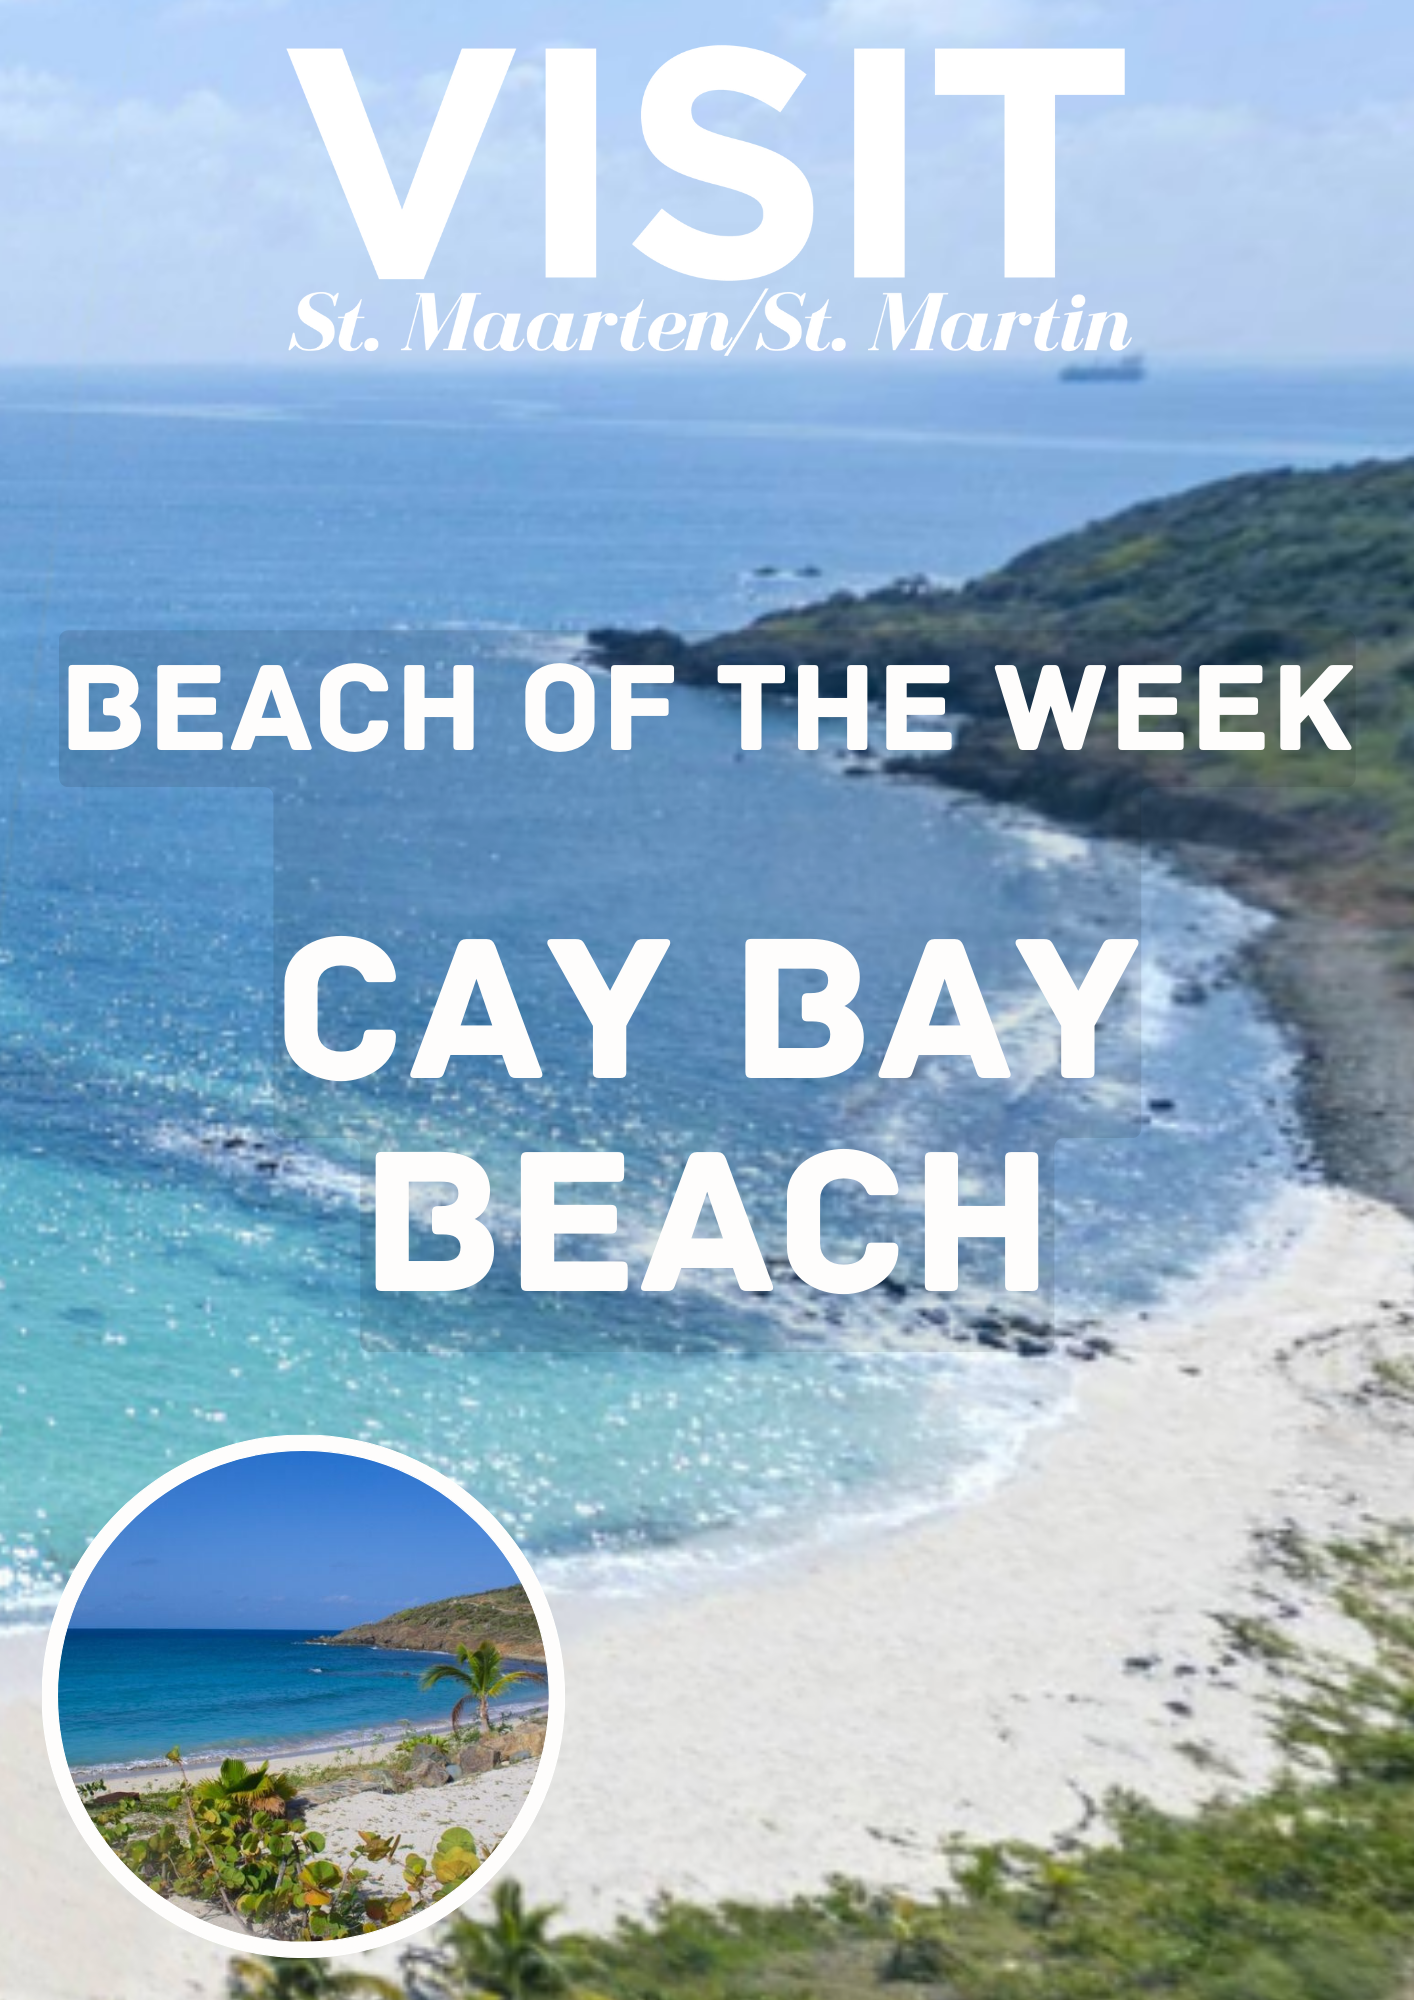 Cay Bay Beach, Best beaches on St Maarten